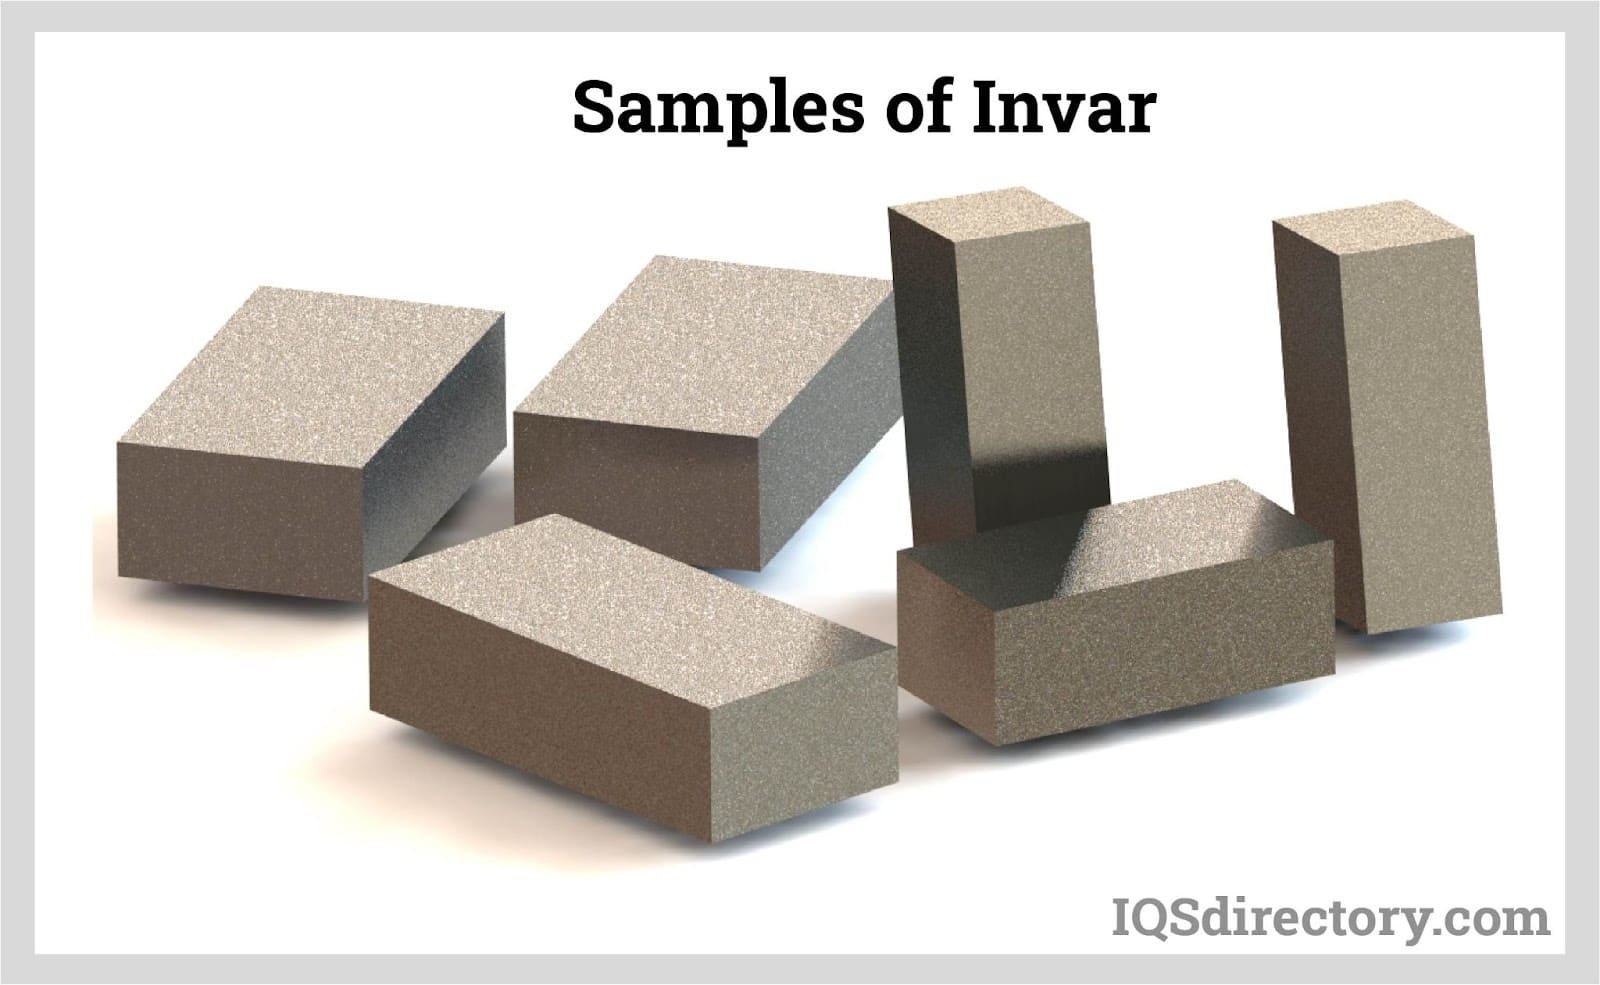 Samples of Invar